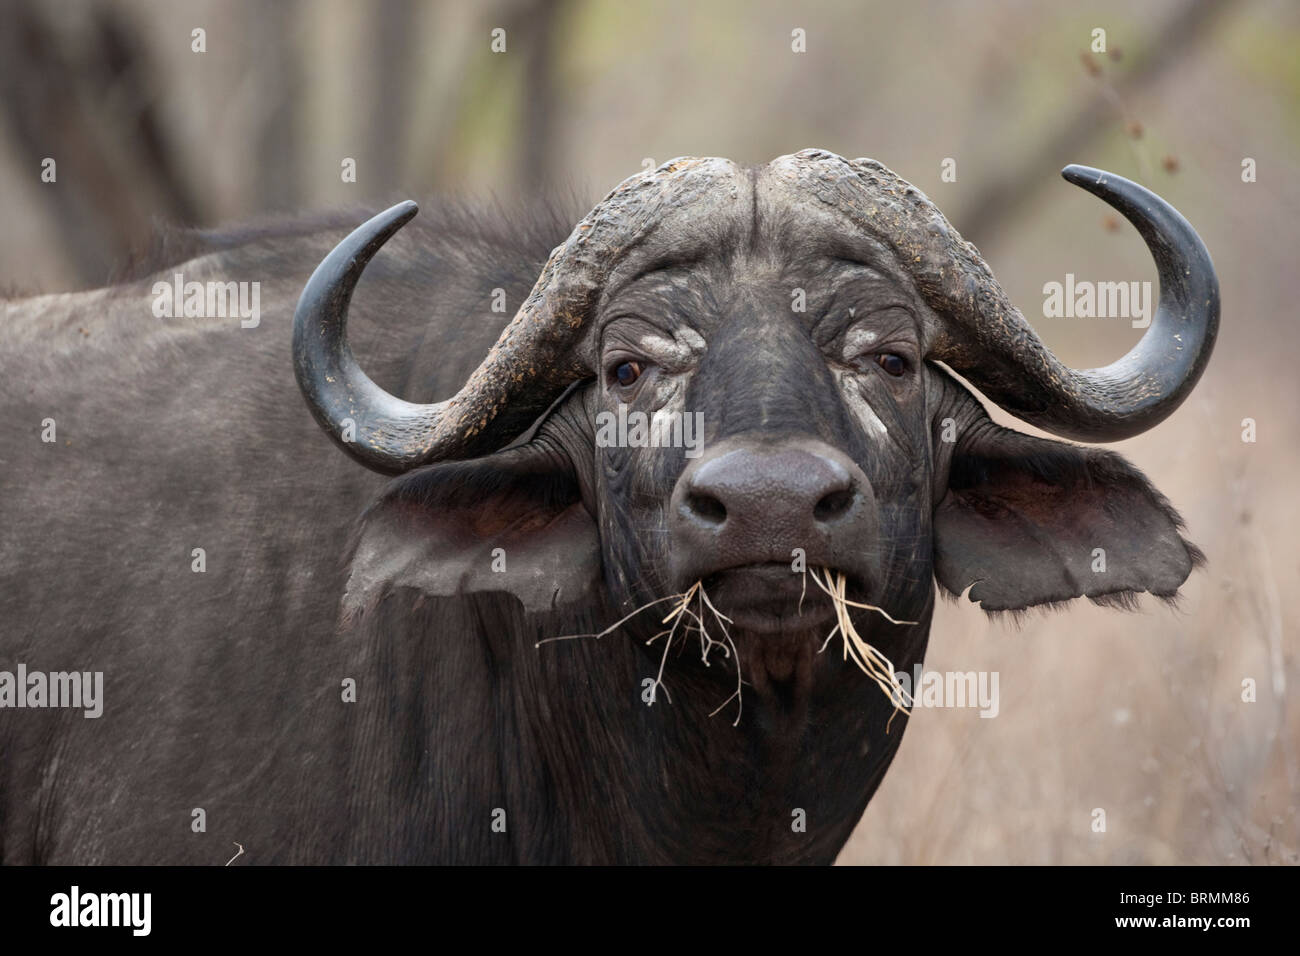 Retrato de un macho de búfalo con aseado, pequeños cuernos simétrica con un bocado de pasto seco Foto de stock